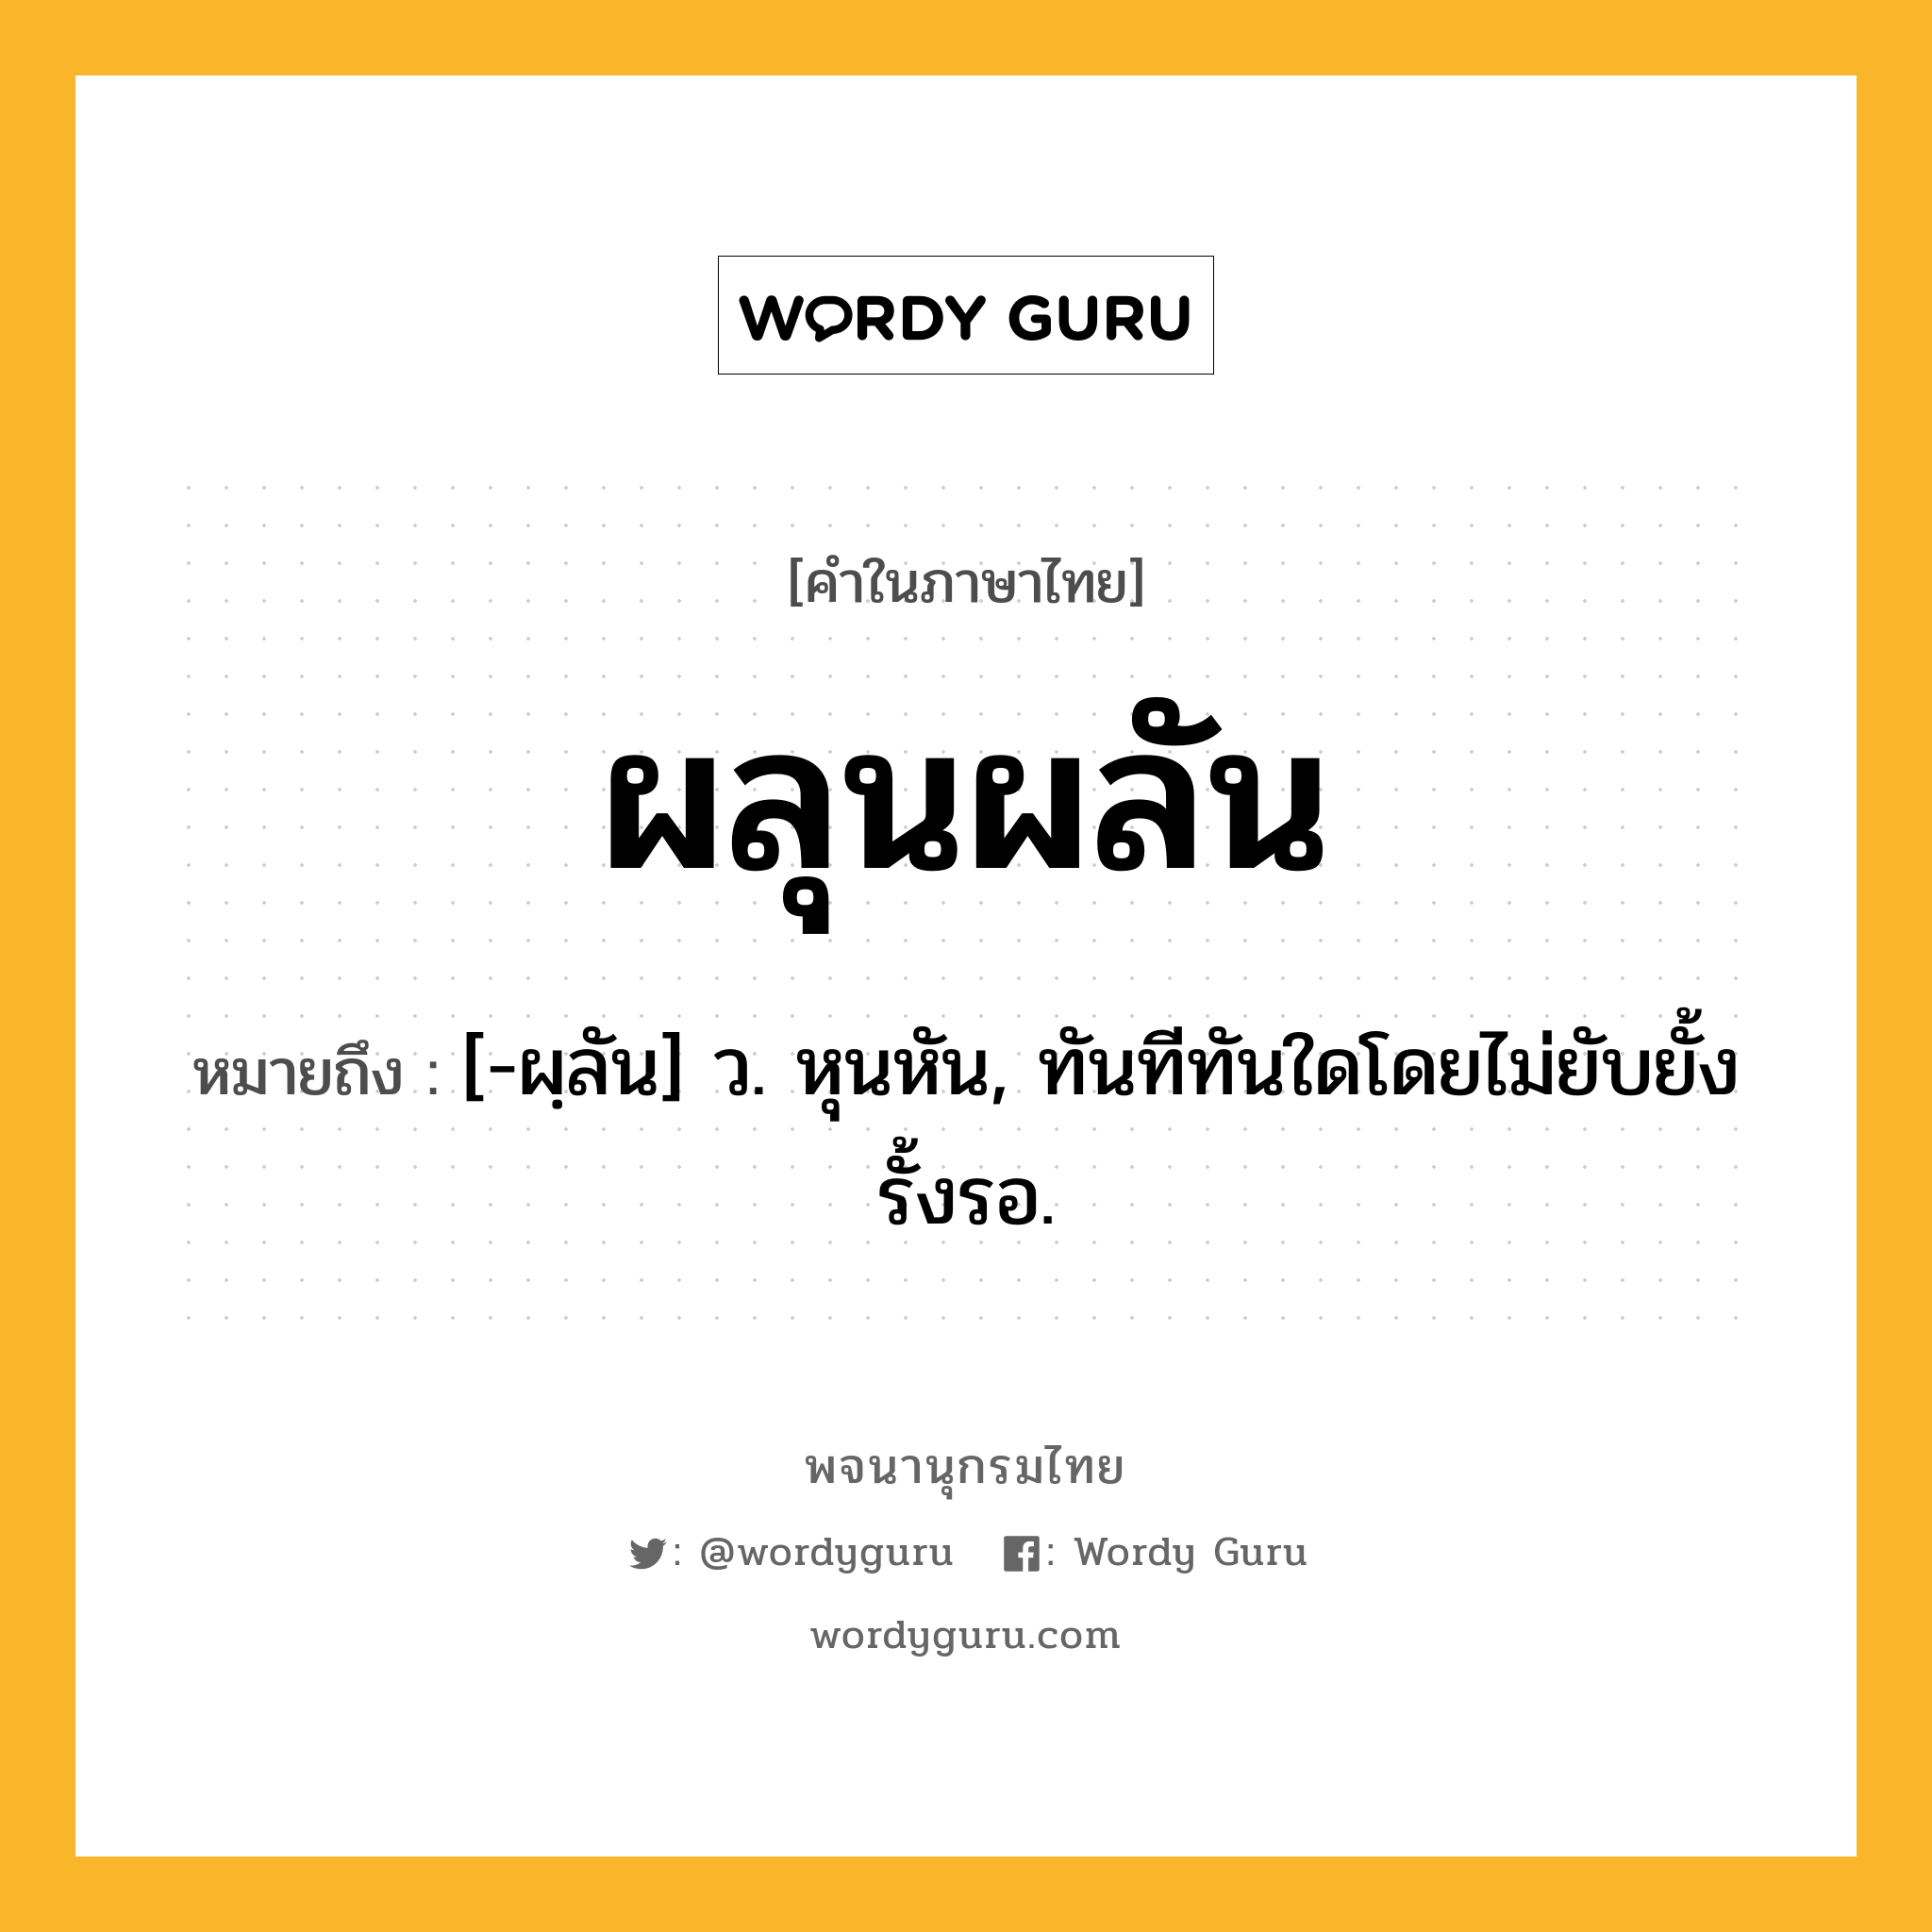 ผลุนผลัน หมายถึงอะไร?, คำในภาษาไทย ผลุนผลัน หมายถึง [-ผฺลัน] ว. หุนหัน, ทันทีทันใดโดยไม่ยับยั้งรั้งรอ.